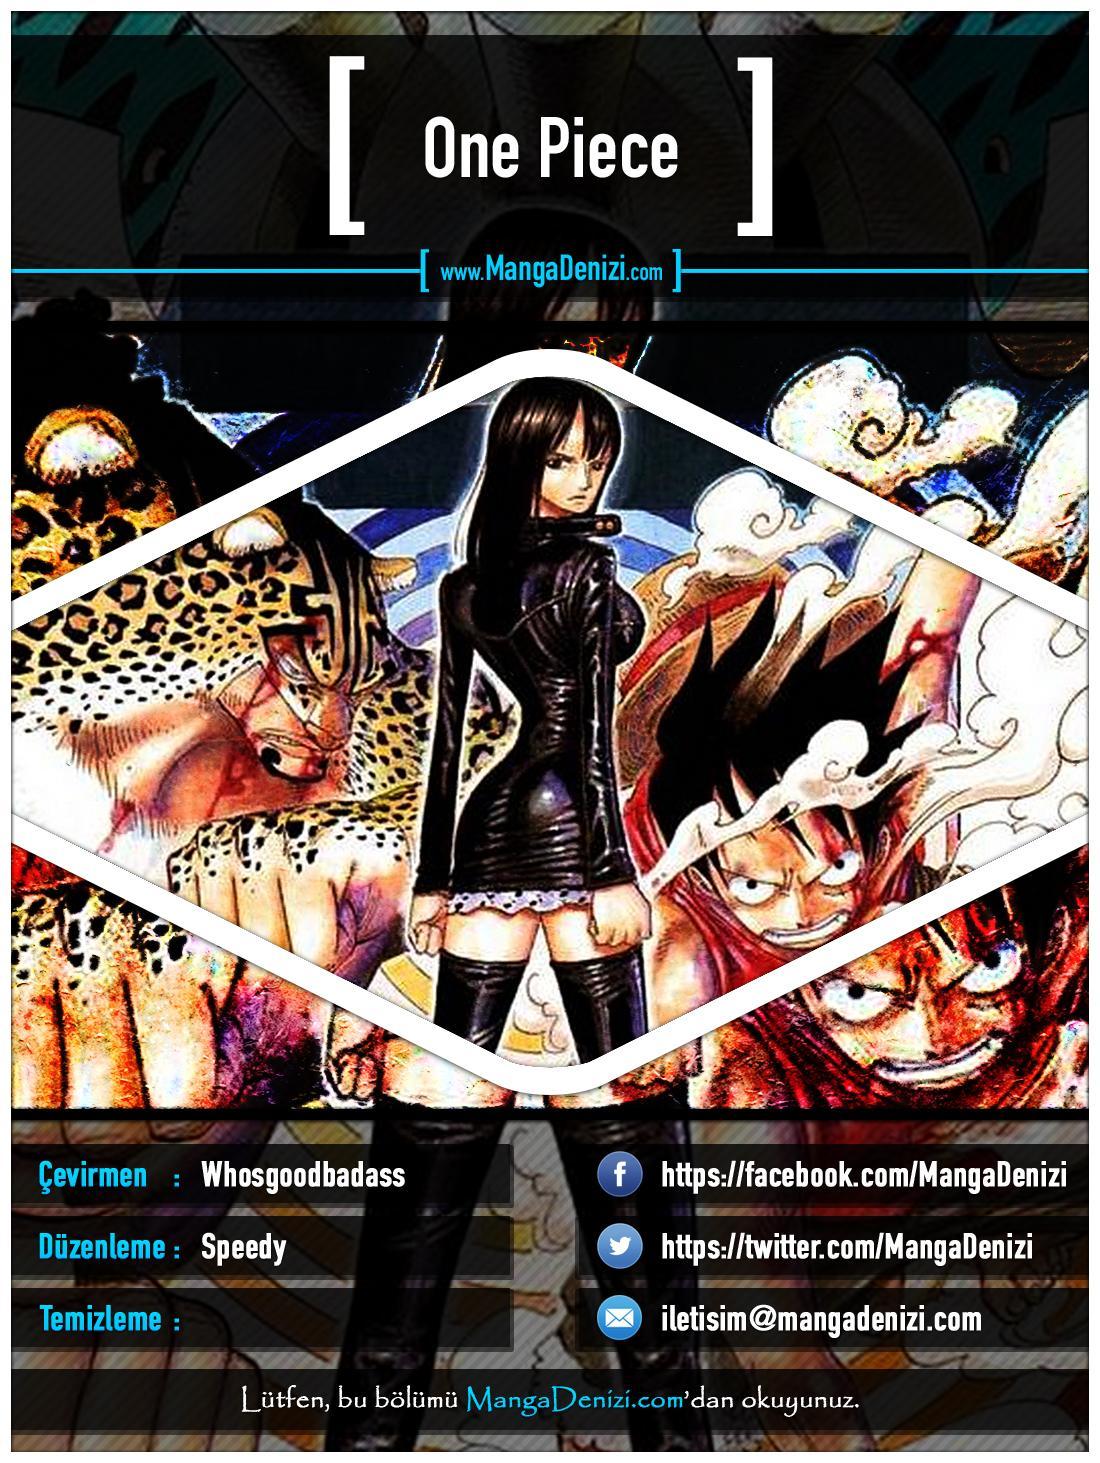 One Piece [Renkli] mangasının 0377 bölümünün 1. sayfasını okuyorsunuz.